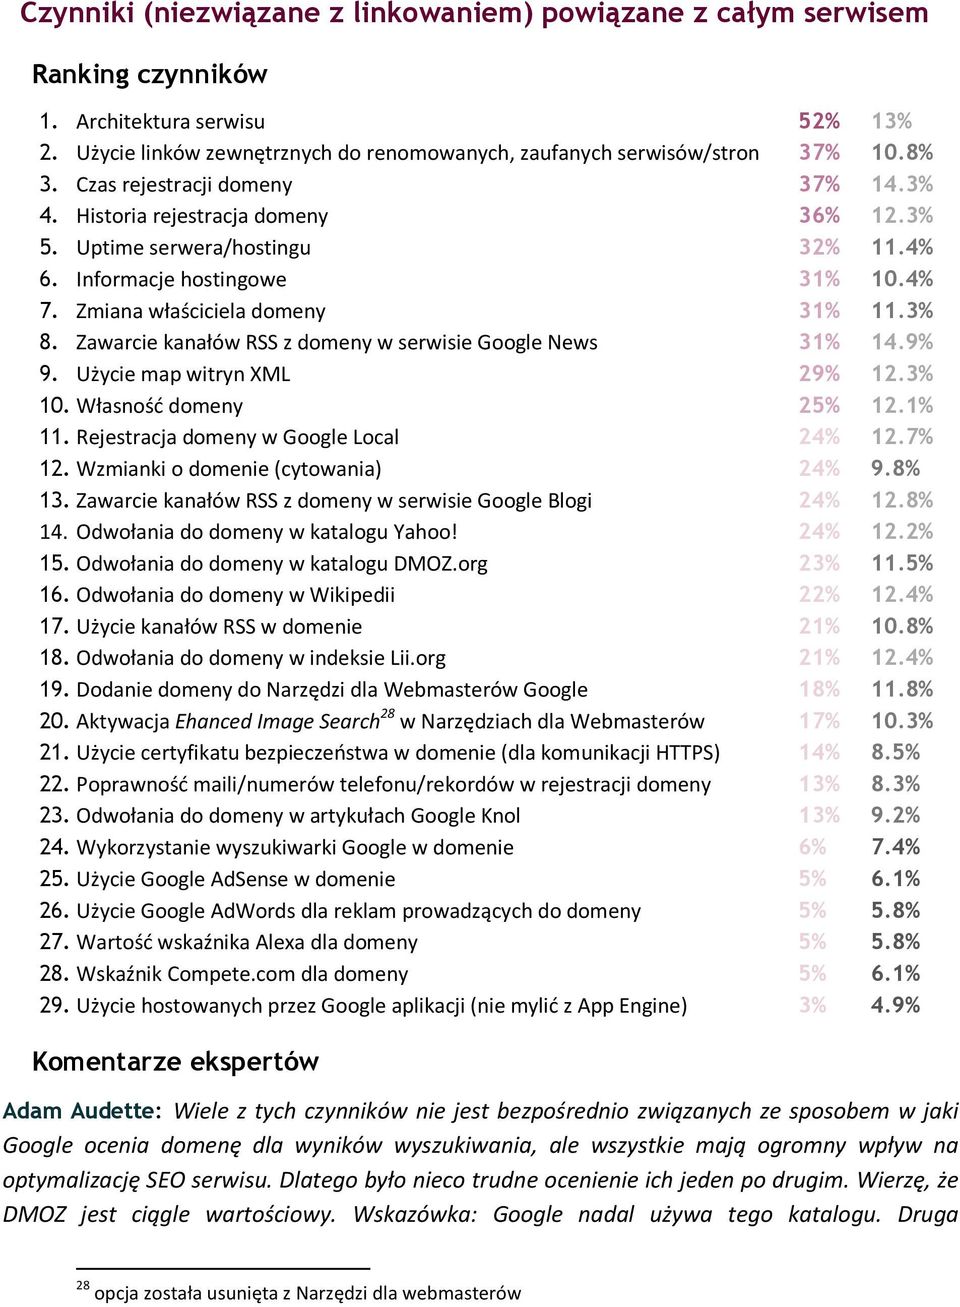 Zawarcie kanałów RSS z domeny w serwisie Google News 31% 14.9% 9. Użycie map witryn XML 29% 12.3% 10. Własność domeny 25% 12.1% 11. Rejestracja domeny w Google Local 24% 12.7% 12.